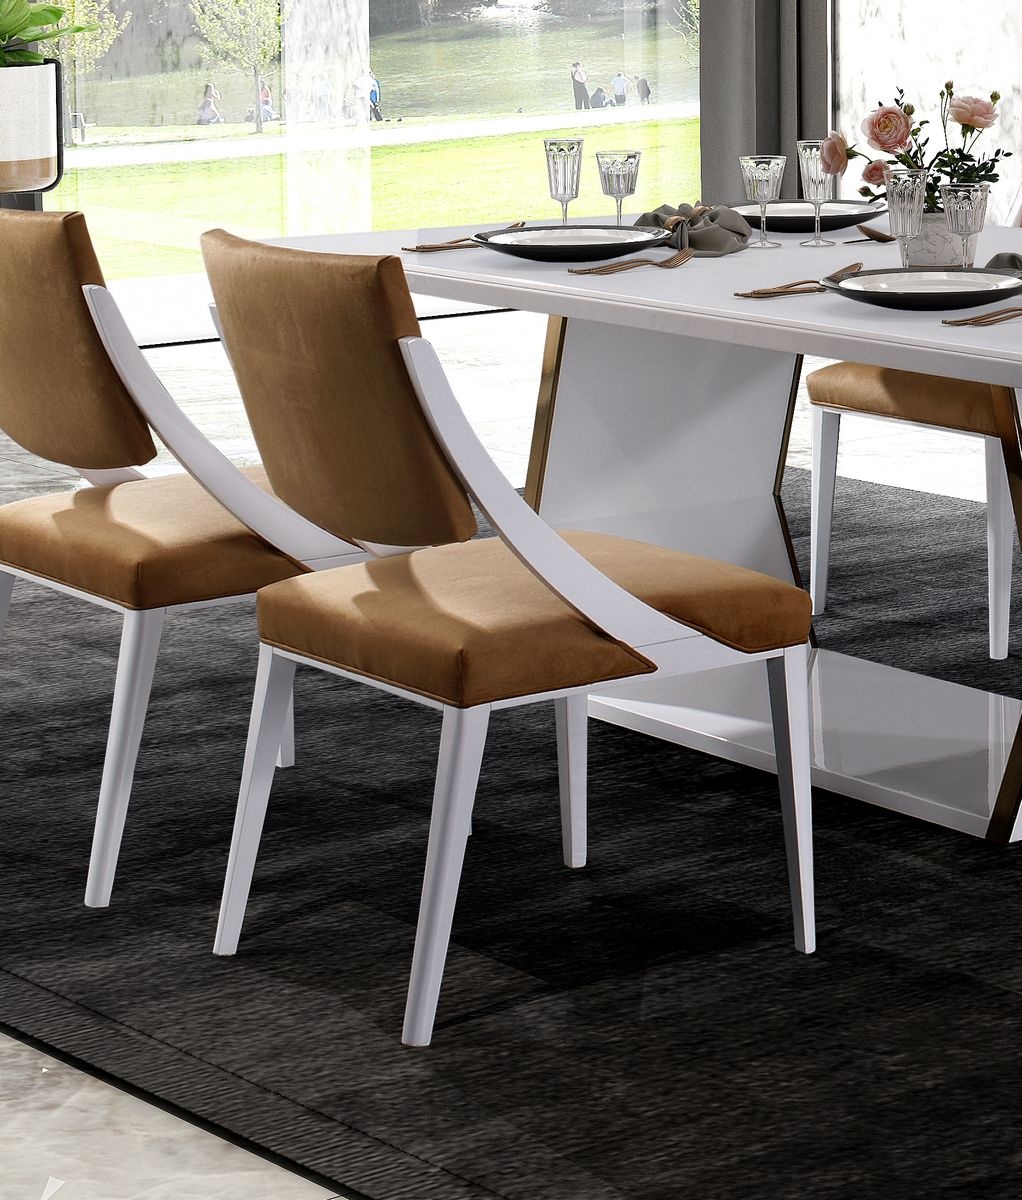 Uma cadeira de sala de jantar moderna, com linhas simples e elegantes ideal para a sala sagres White é a combinação perfeita para criar uma atmosfera acolhedora.